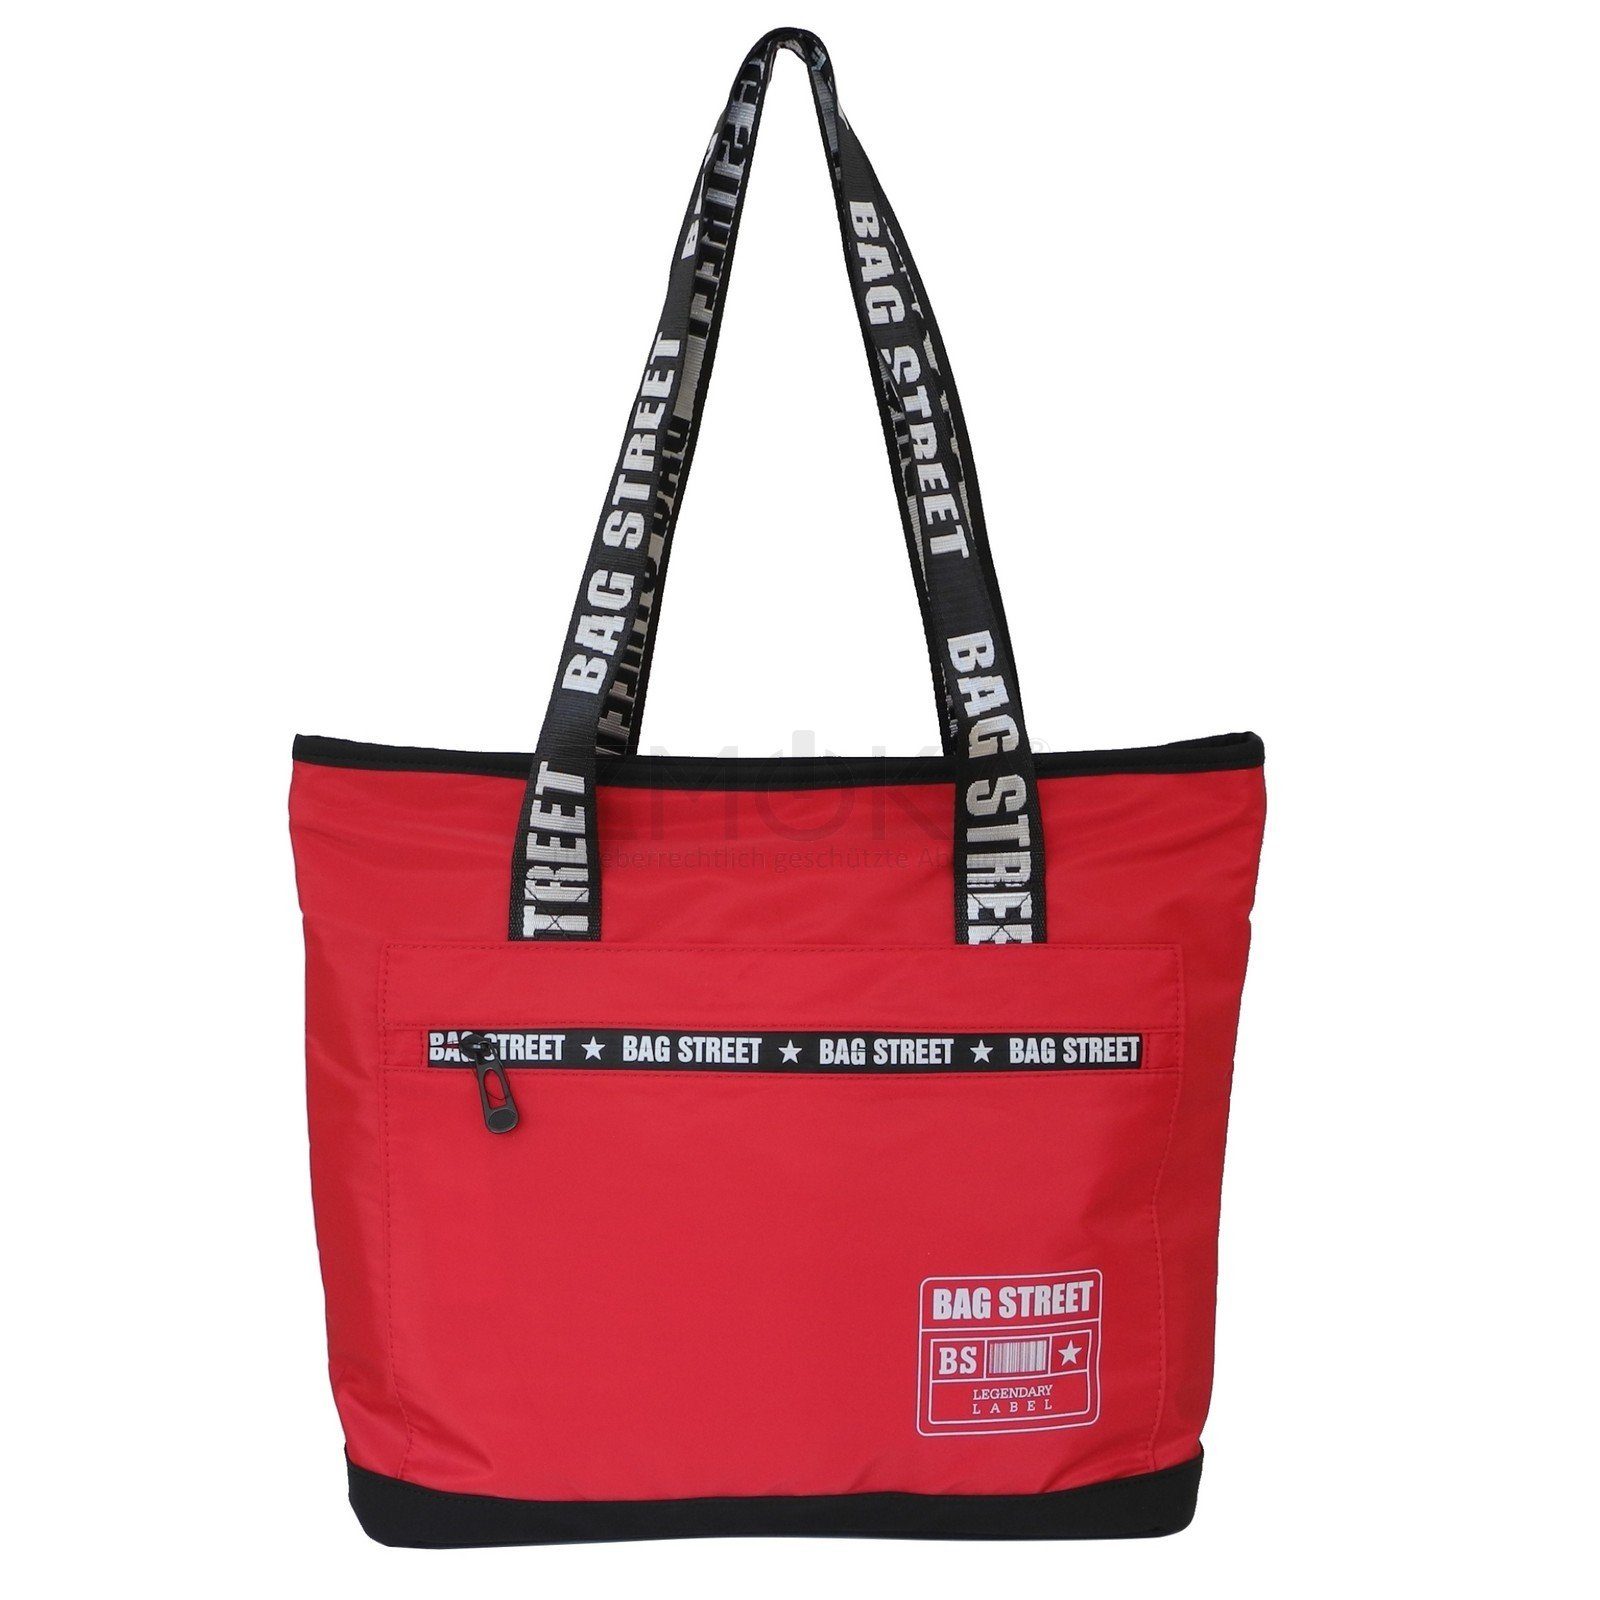 BAG STREET Bag Street leichter Damen Shopper Rot - Handtasche Schultertasche Handtasche Auswahl